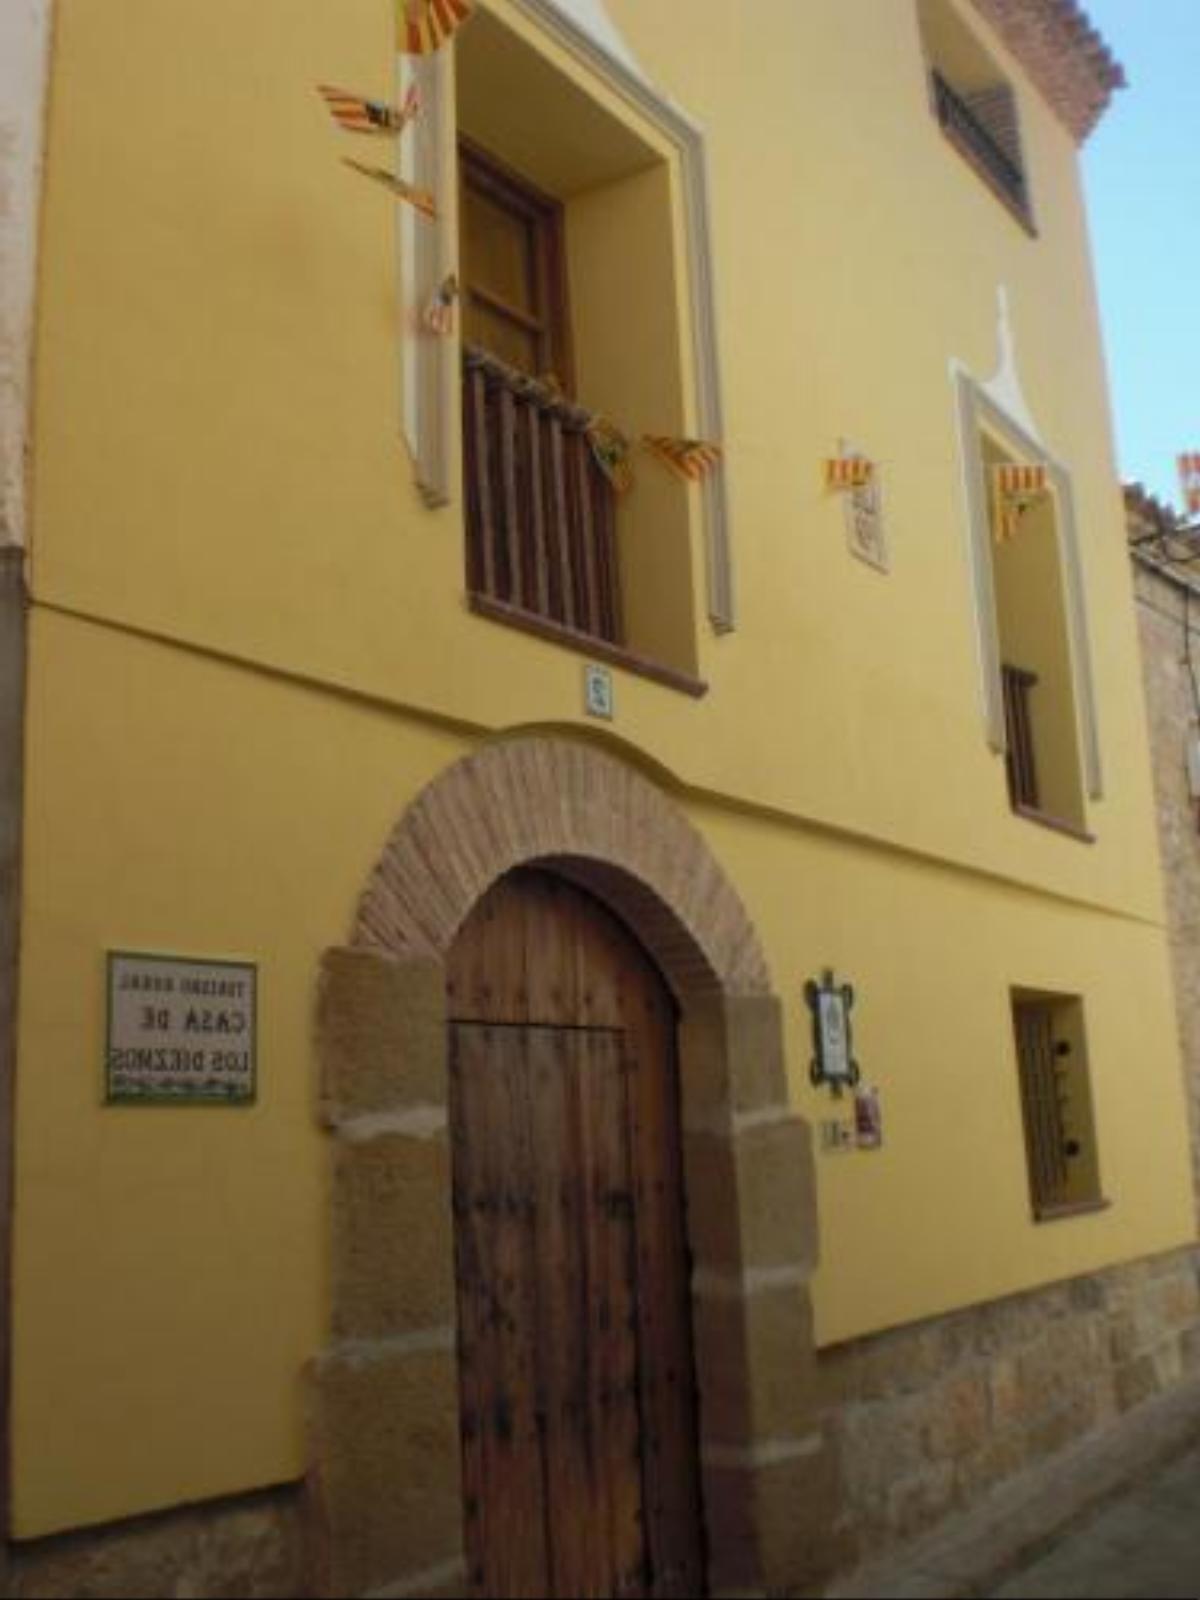 Casa De Los Diezmos Hotel Alborge Spain